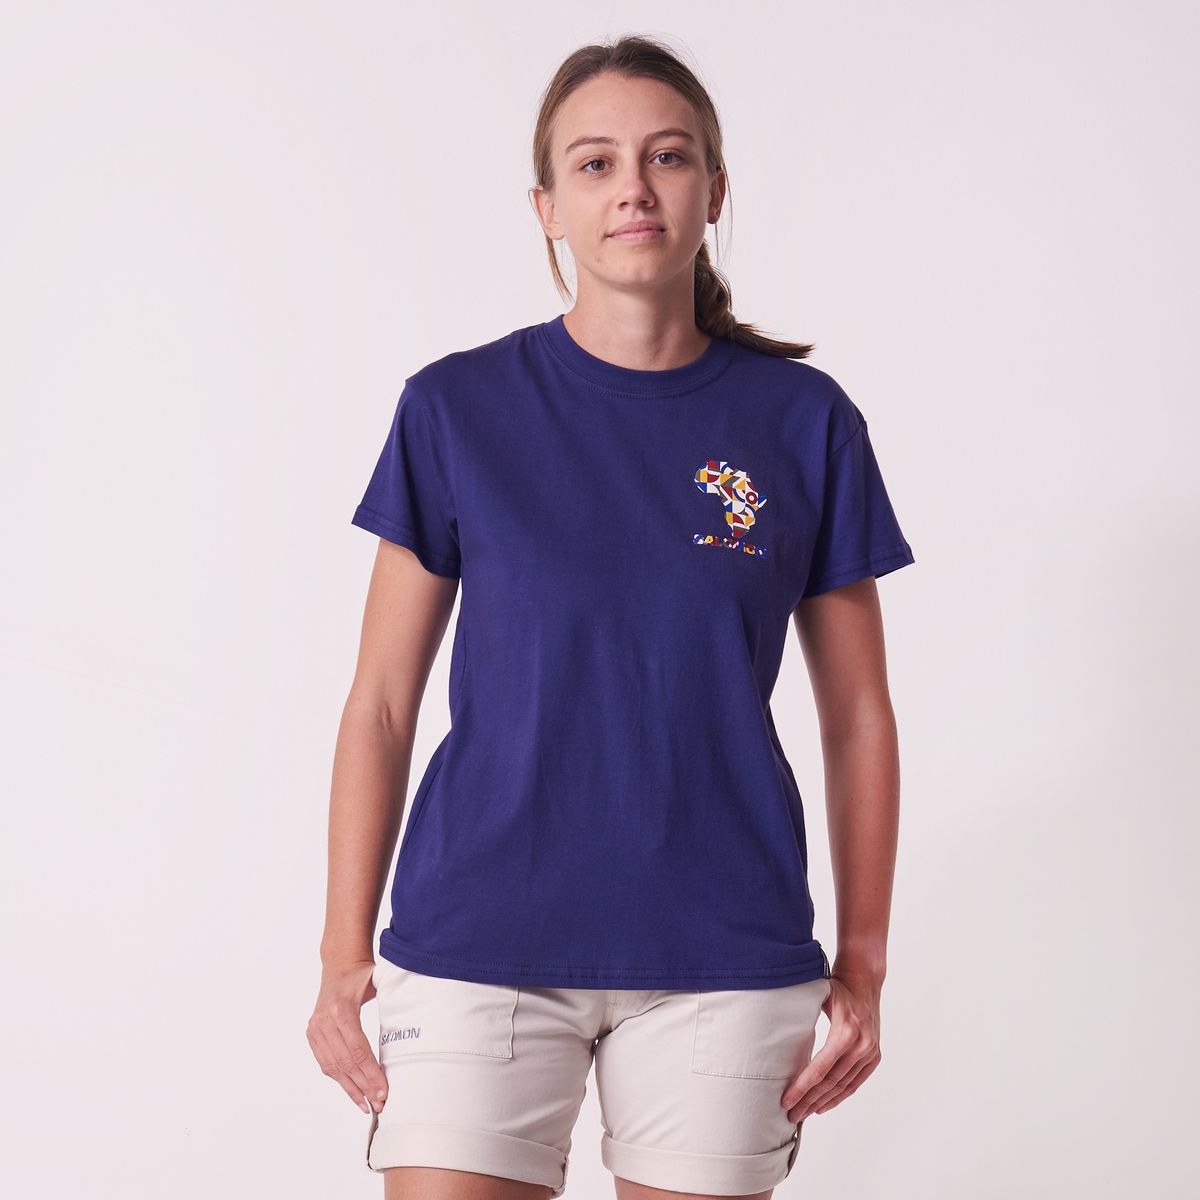 Salomon Women's Great Heart Short Sleeve T-Shirt - Astral Aura | Shop ...